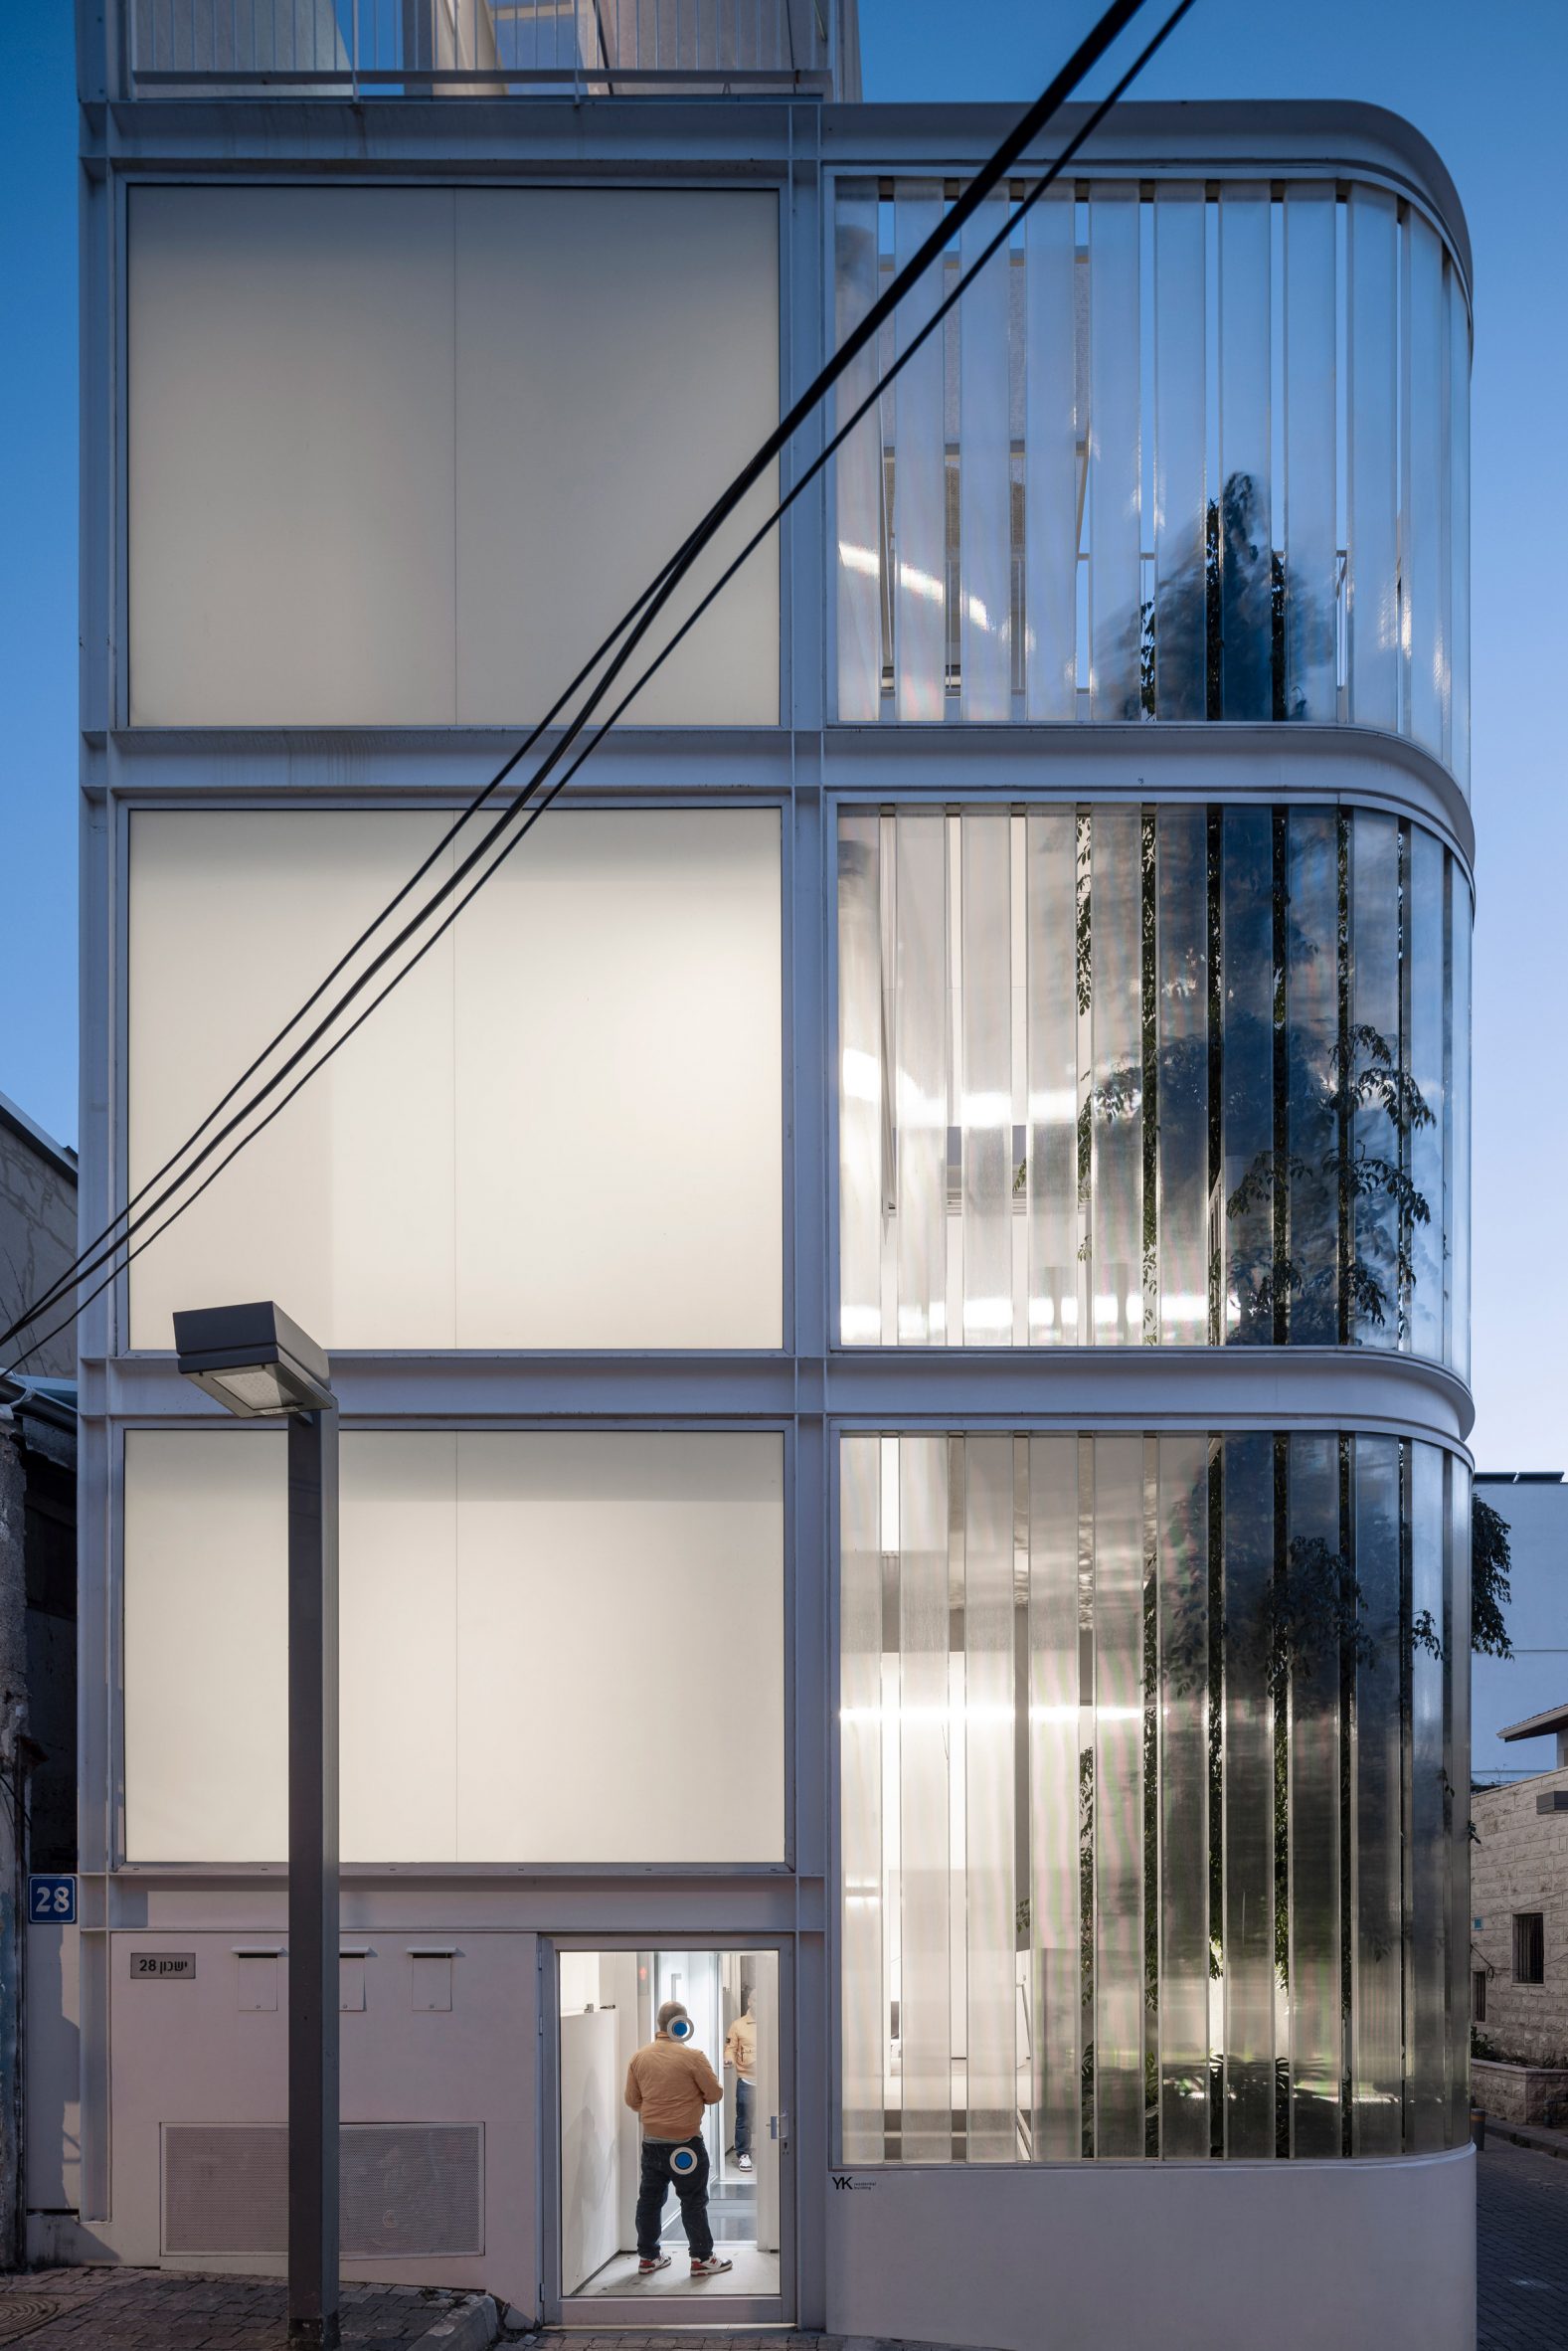 Y/K Building by Paritzki & Liani Architects